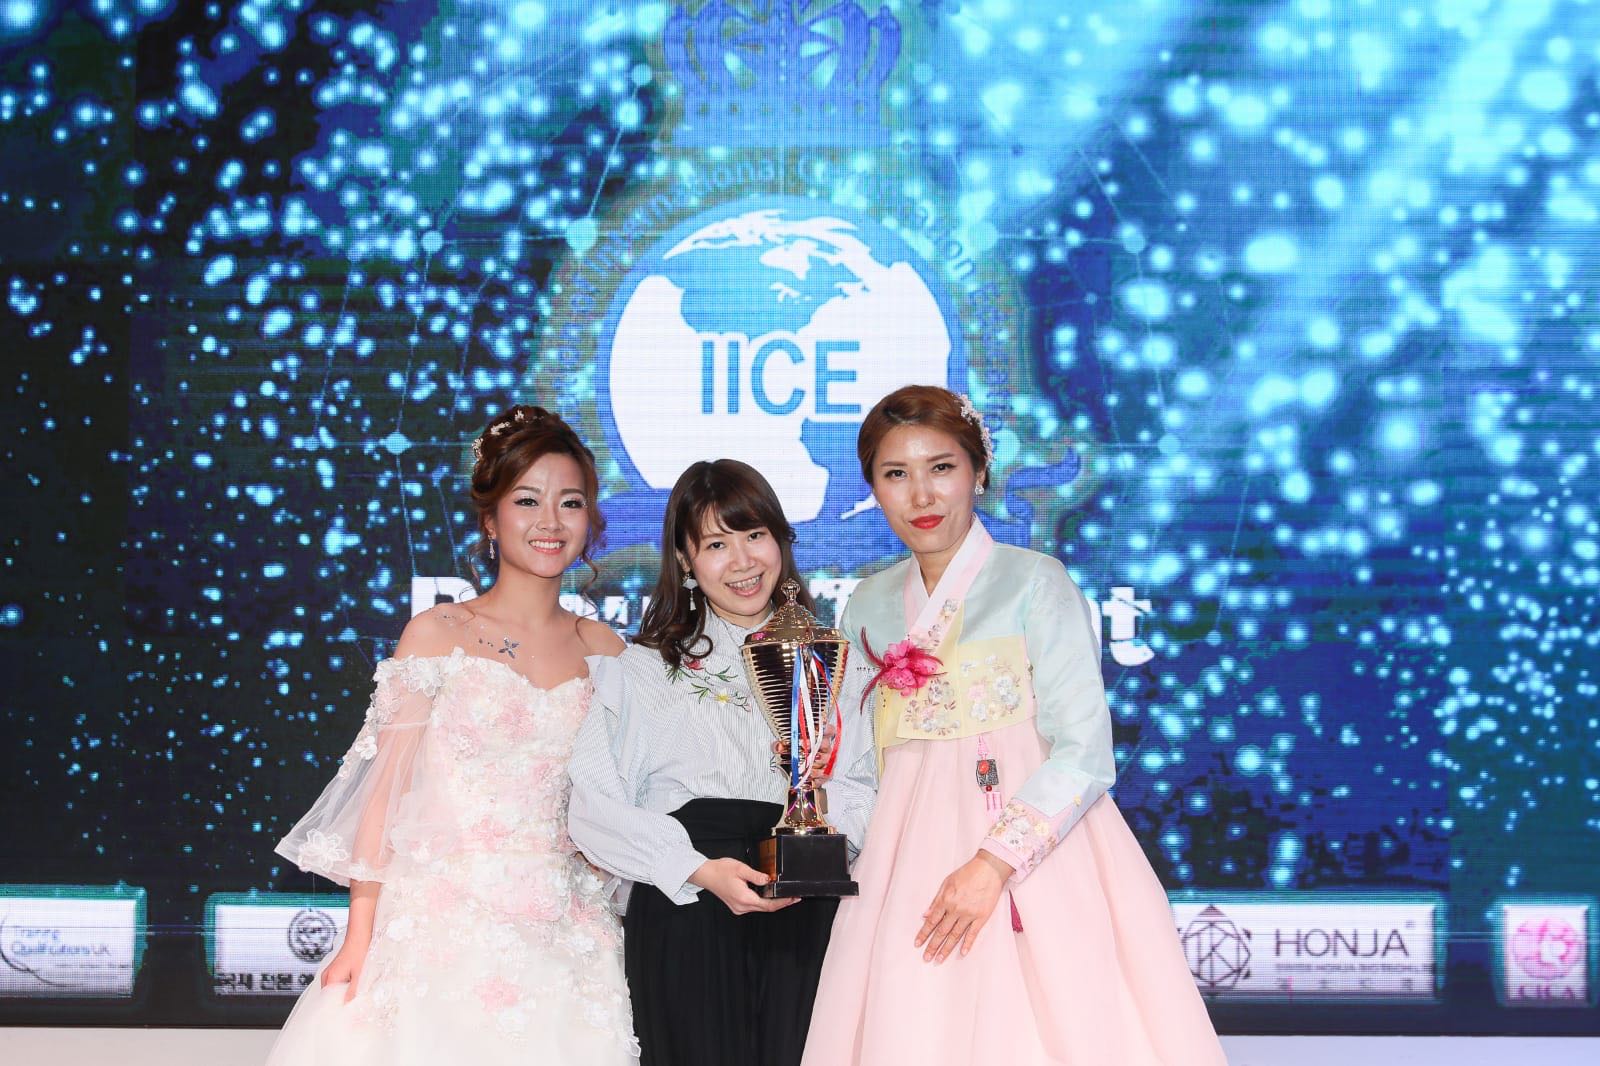 化妝師報導: 2018年獲得IICE國際美業大賽(香港站)華麗新娘化妝賽冠軍